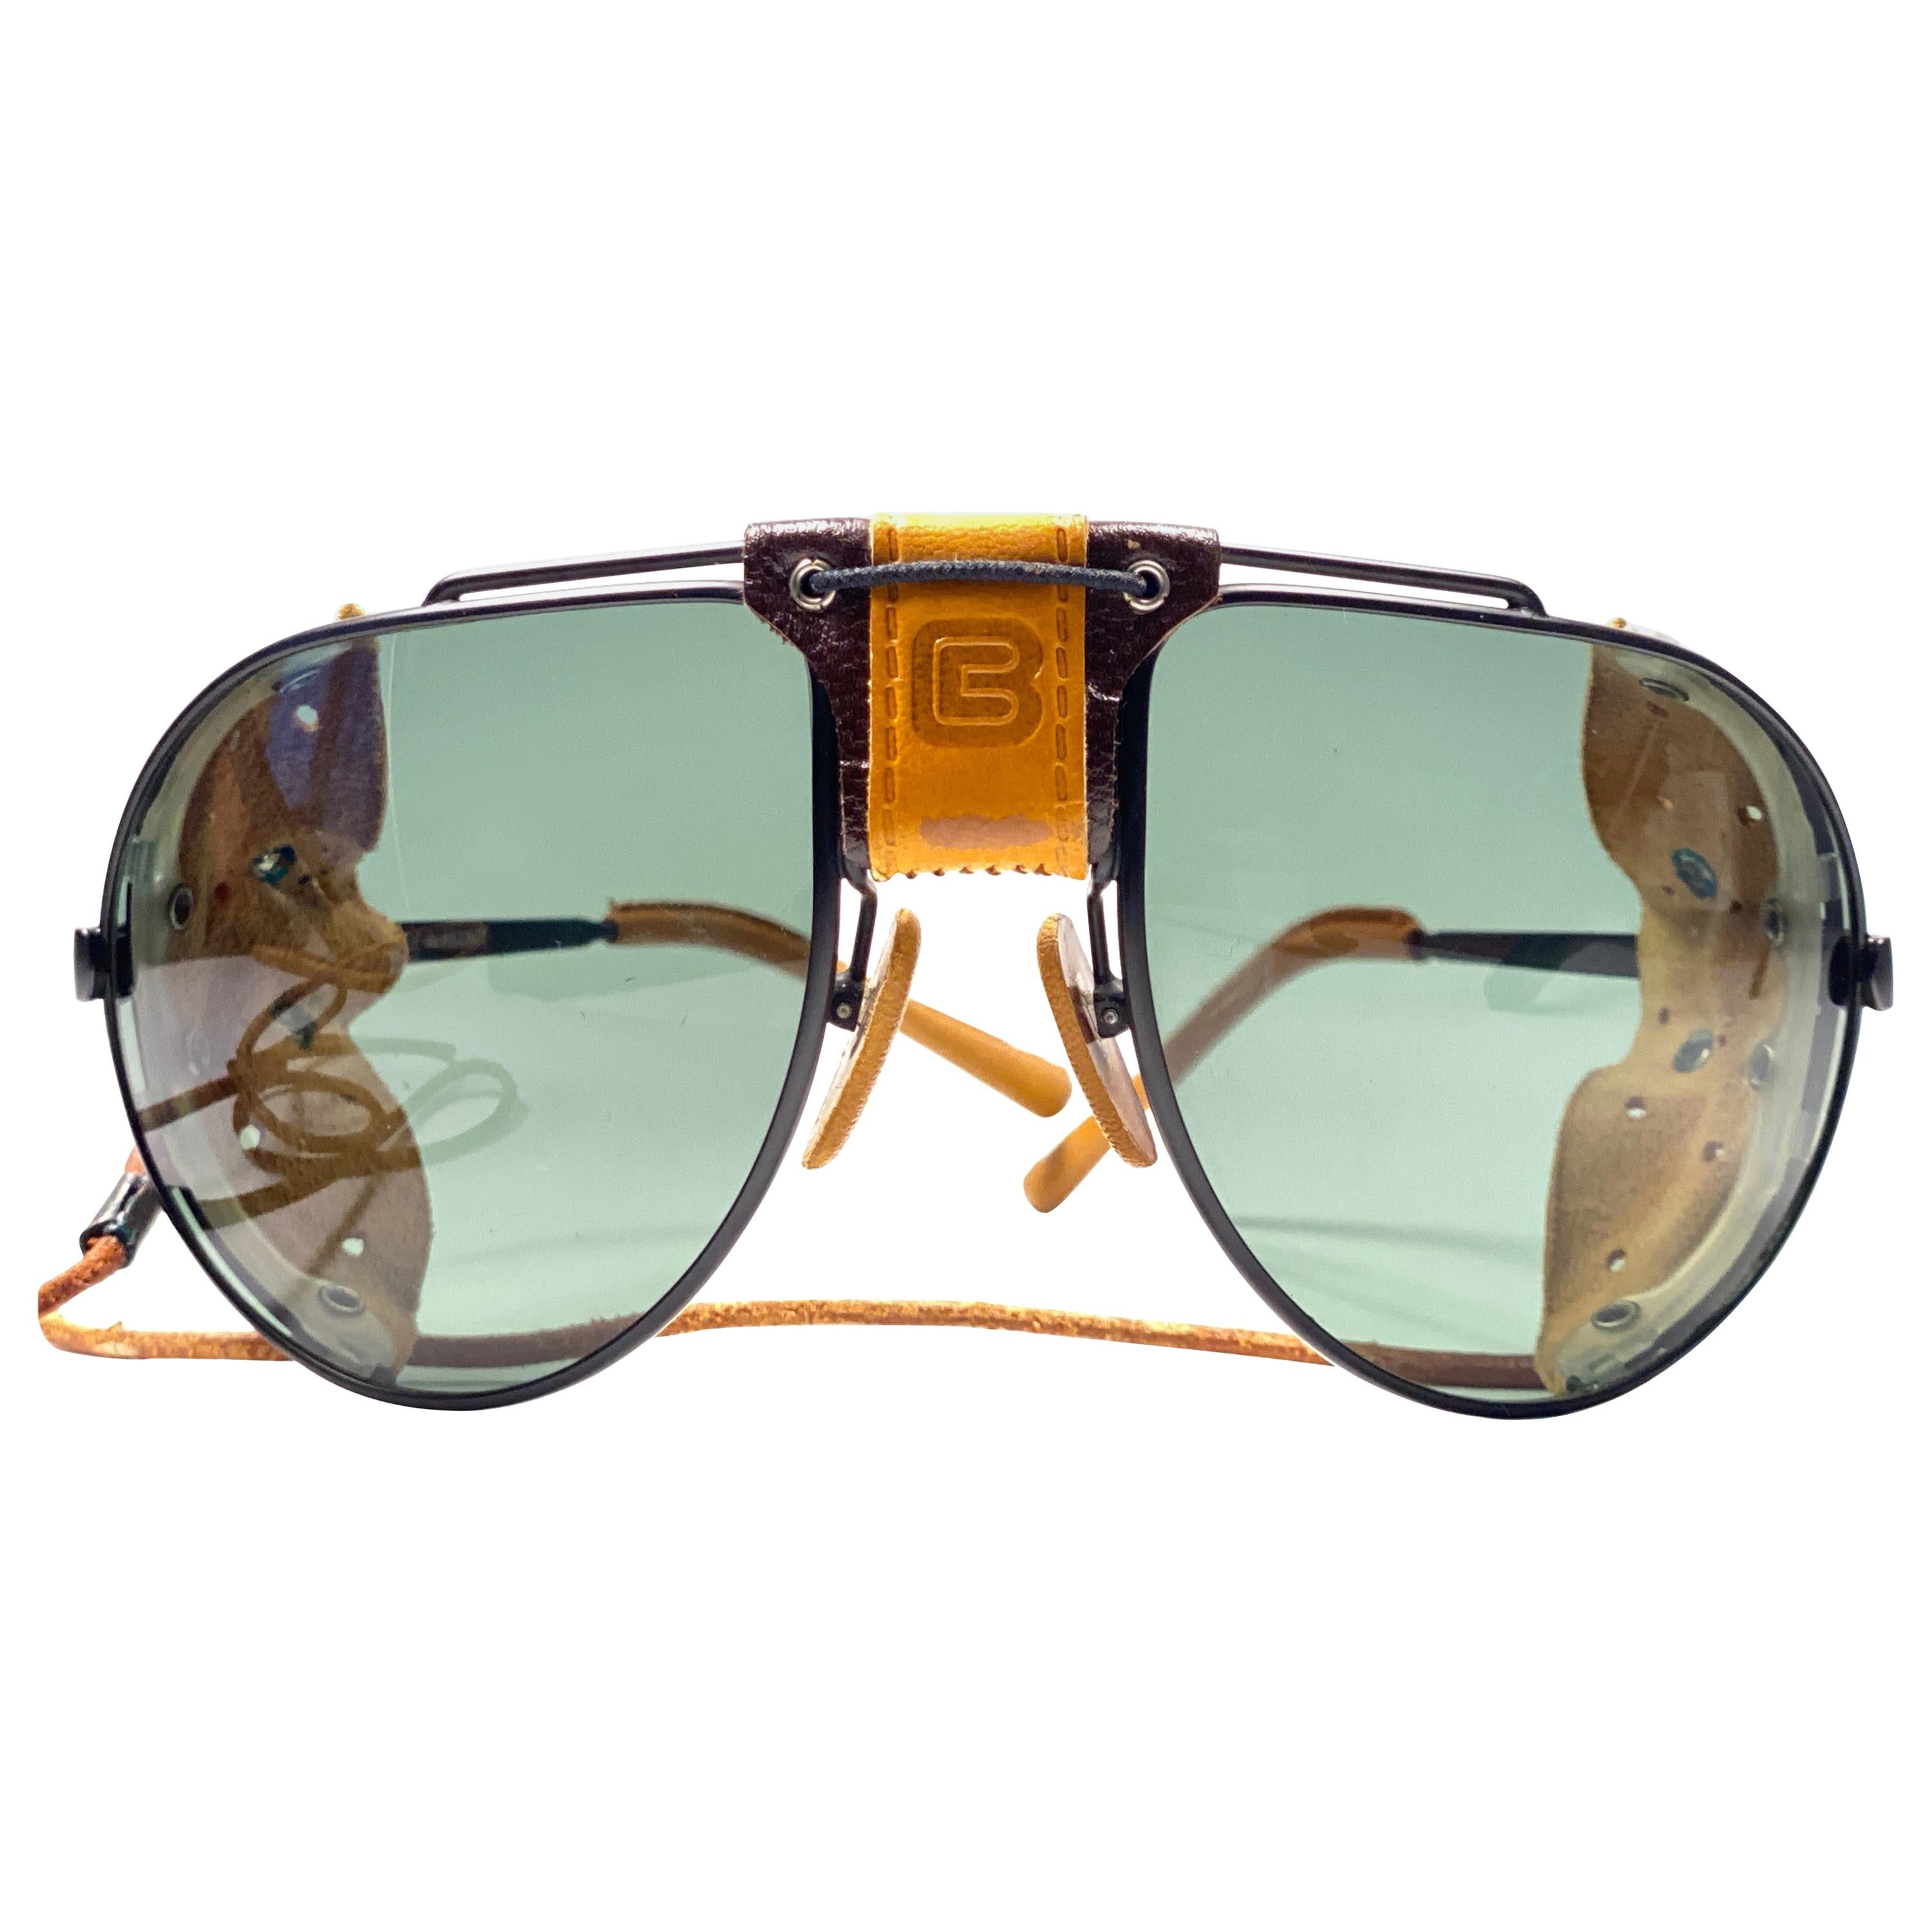 Cebe Sunglasses Vintage - 2 For Sale on 1stDibs | cebe dakar sunglasses, cebe  2000 sunglasses, cebe 4000 sunglasses